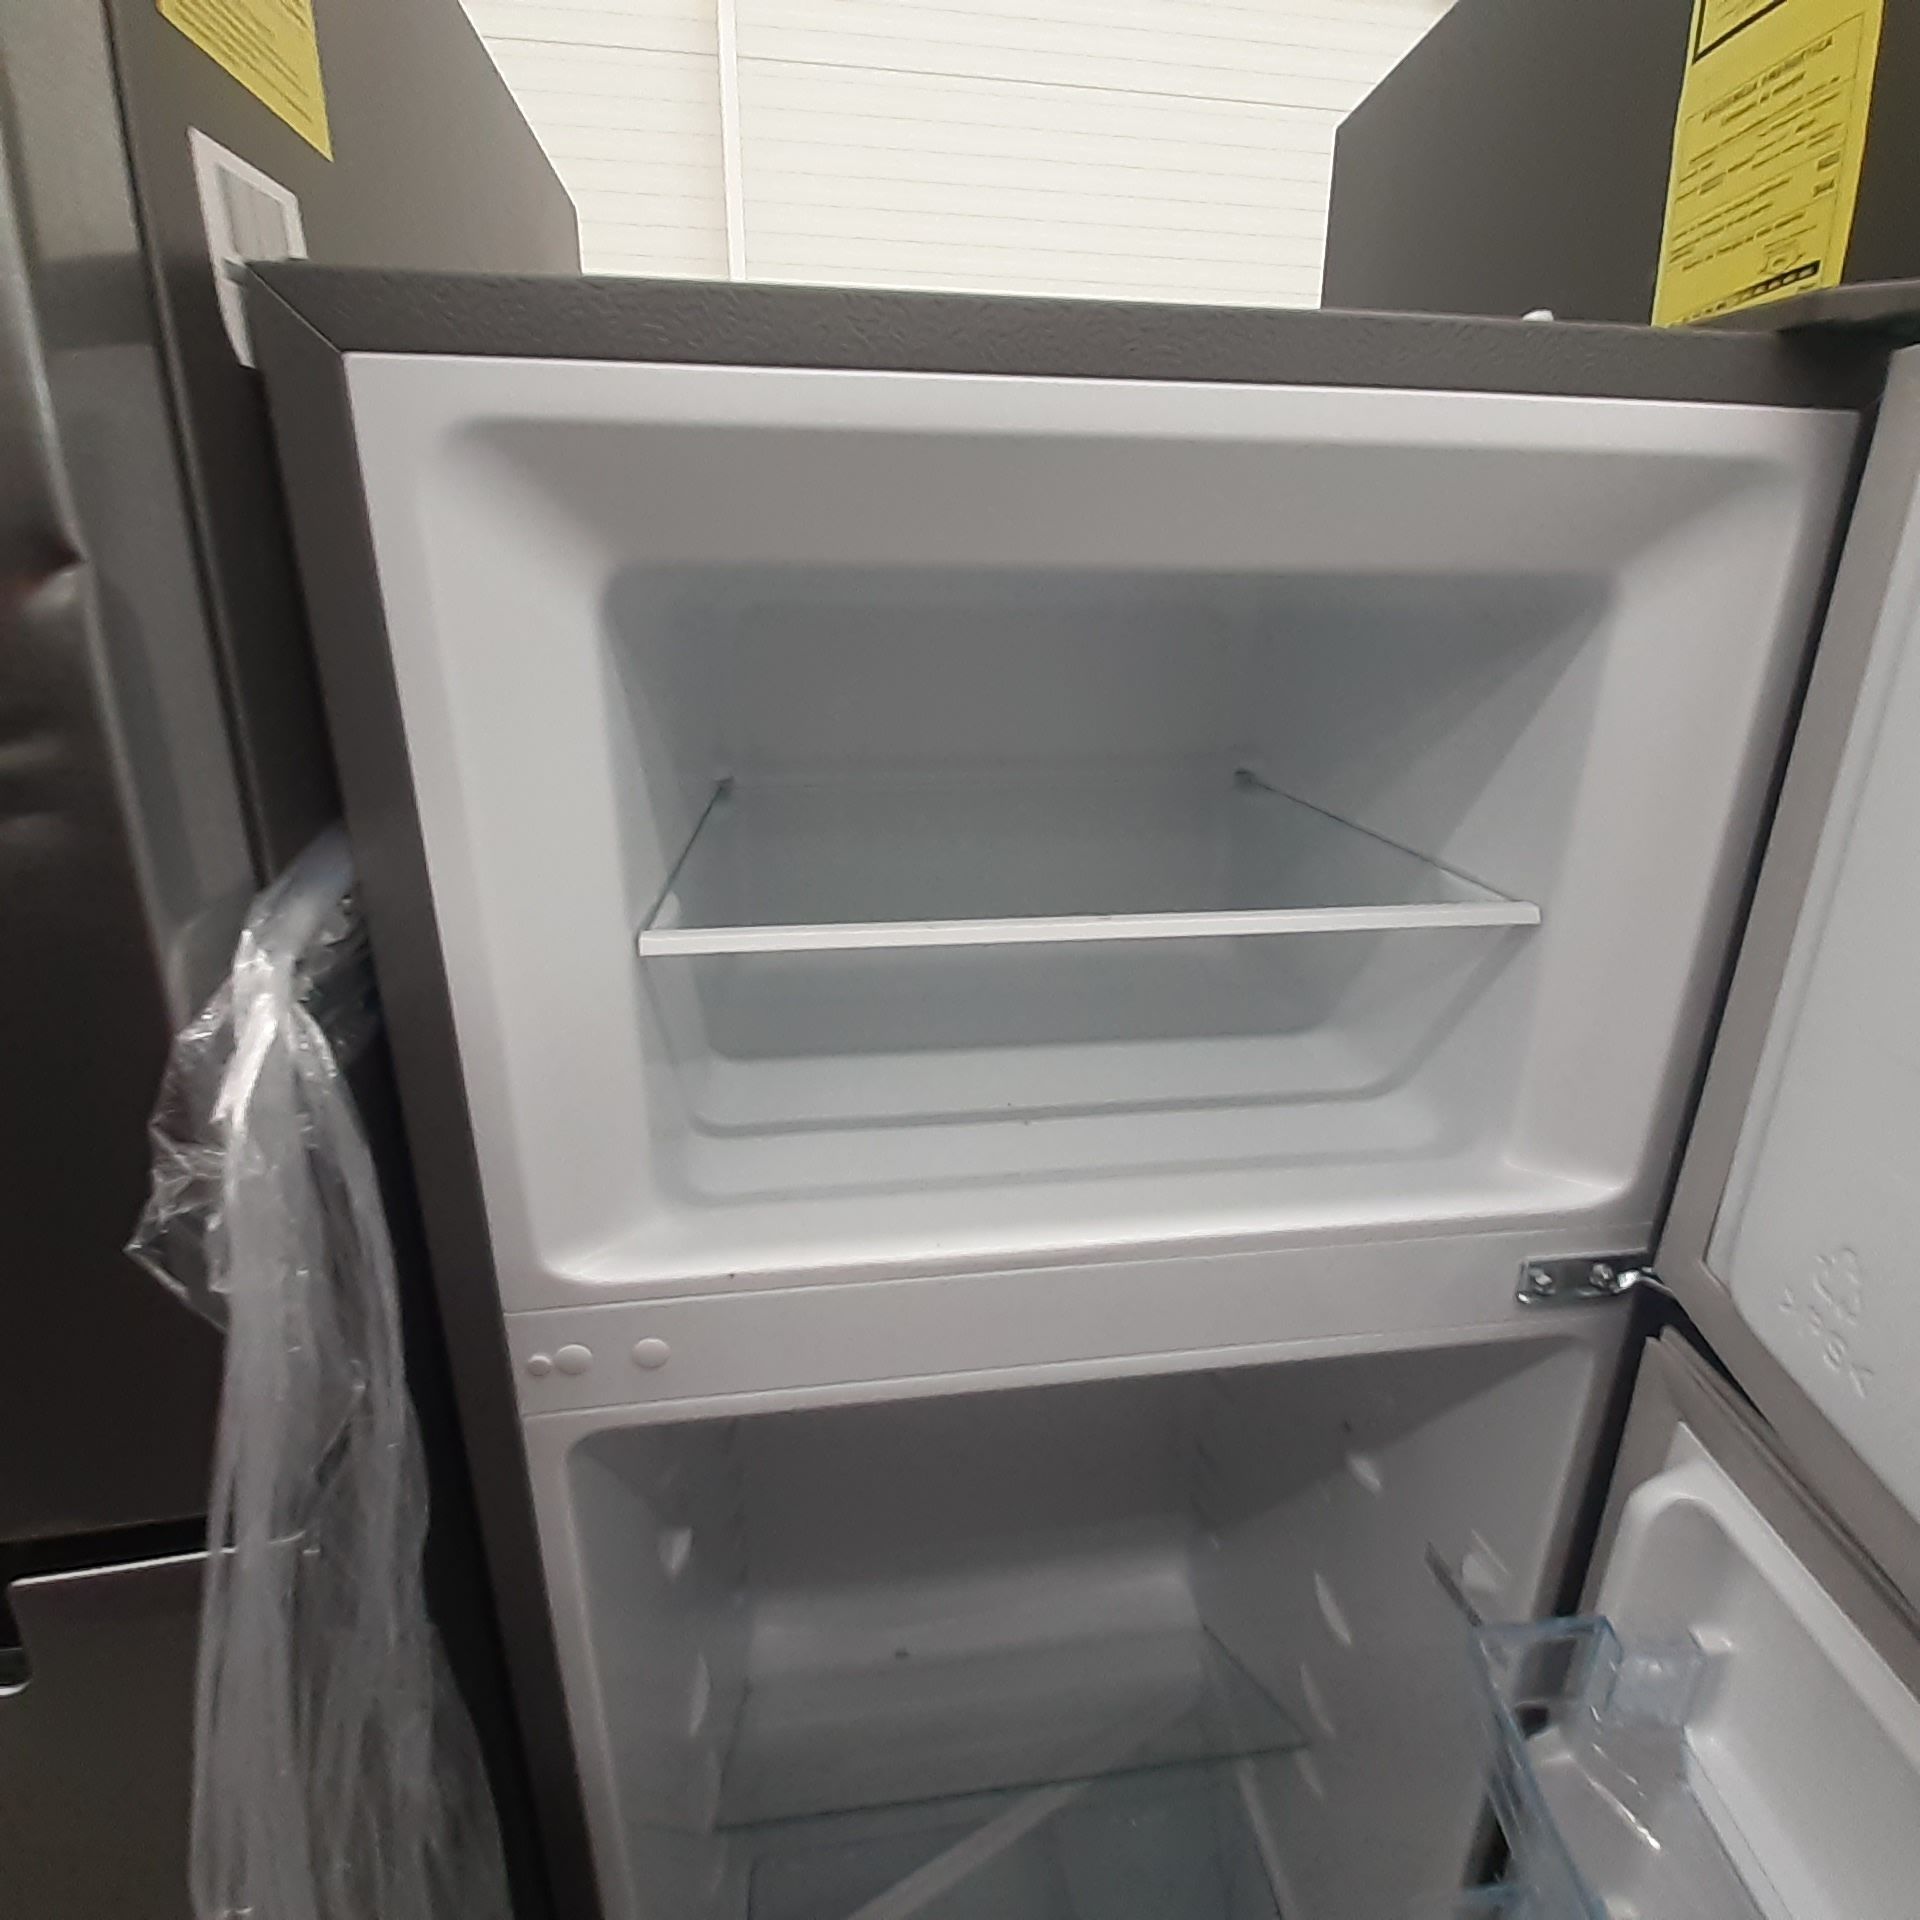 Lote De 2 Refrigeradores: 1 Refrigerador Con Dispensador De Agua Marca Samsung, 1 Refrigerador Marca - Image 14 of 18